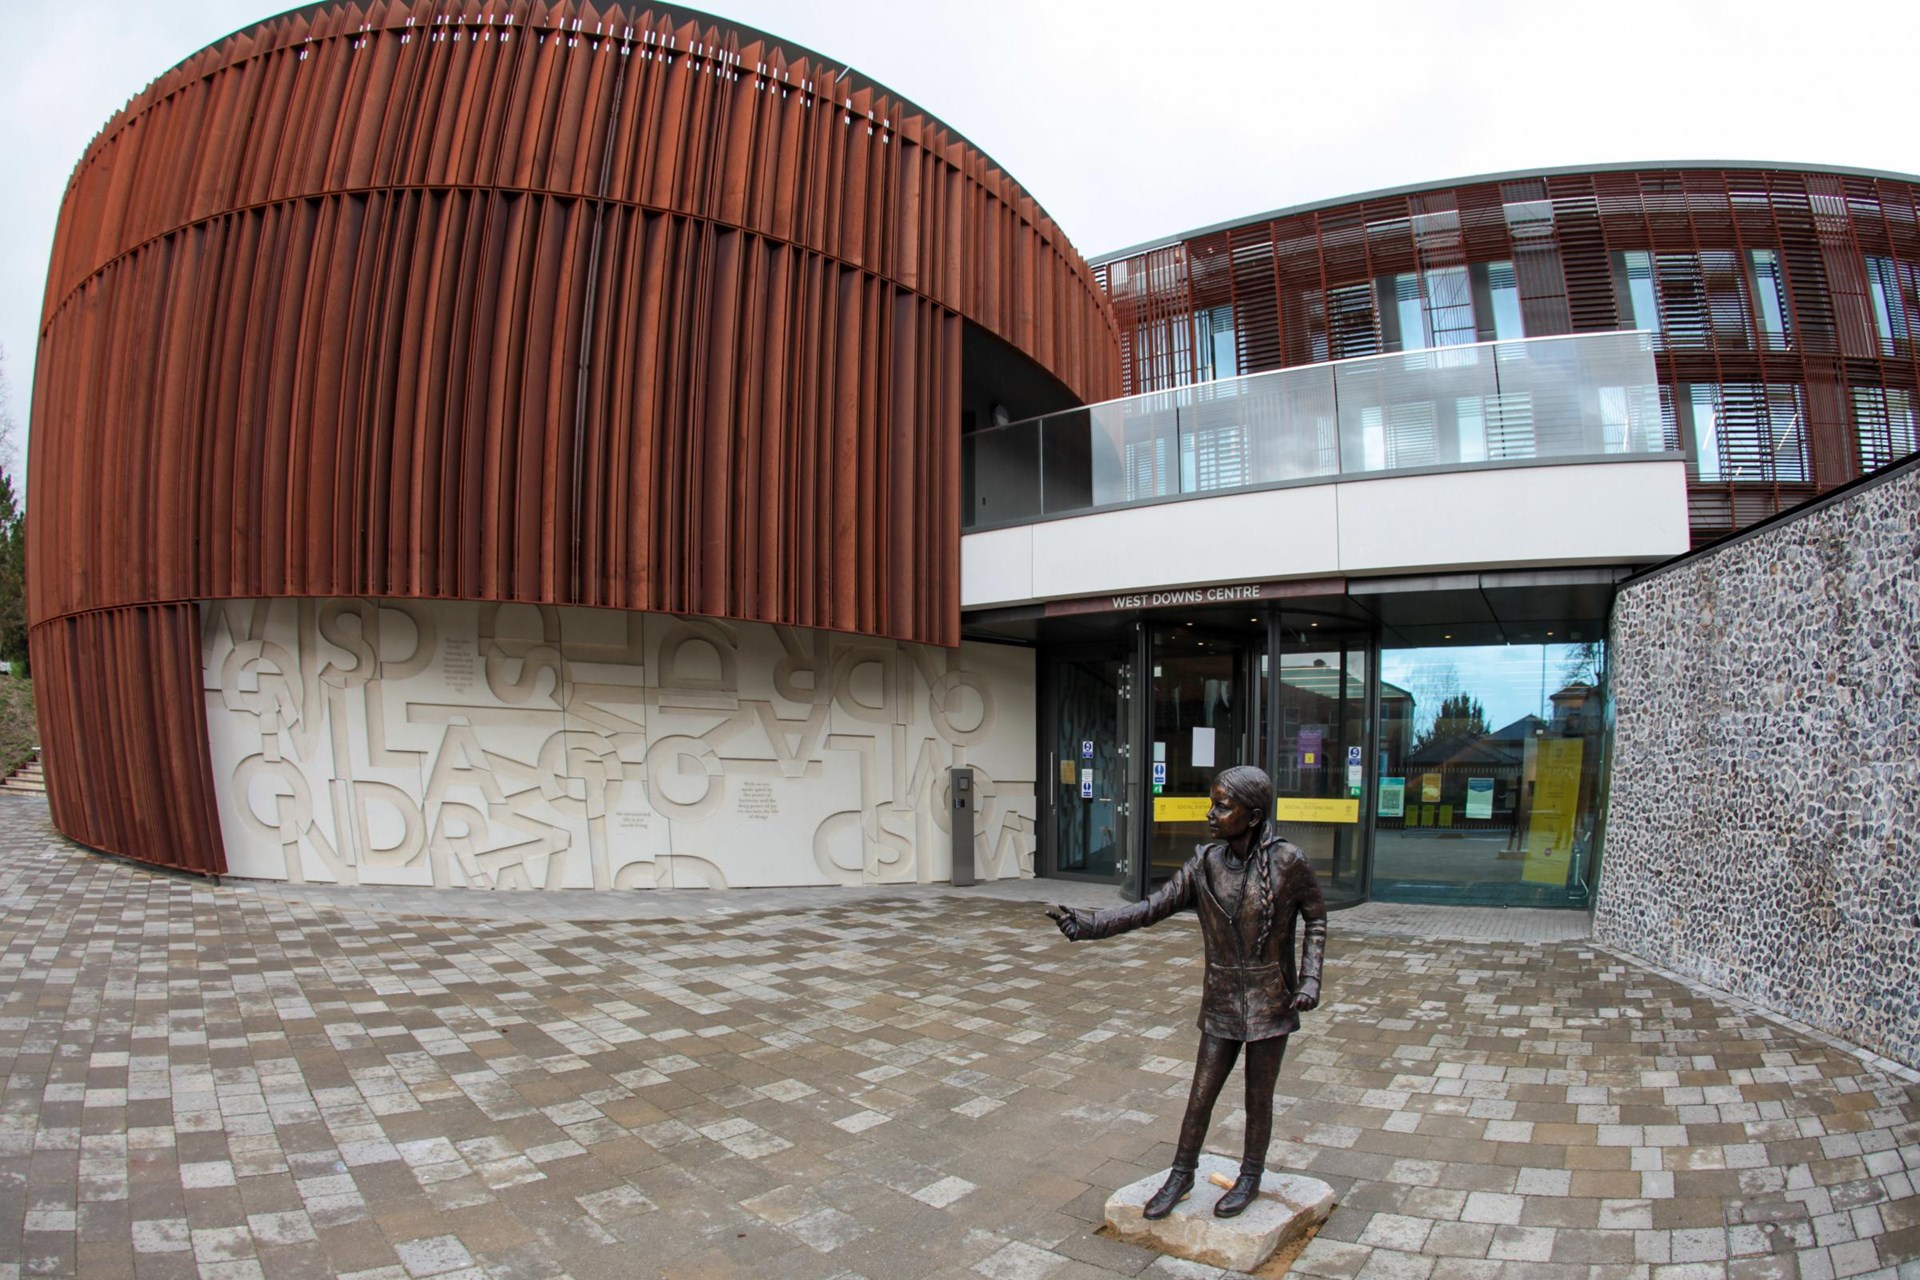 Άγαλμα αφιερωμένο στην Γκρέτα Τούνμπεργκ σε βρετανικό πανεπιστήμιο – Αντιδρούν οι φοιτητές